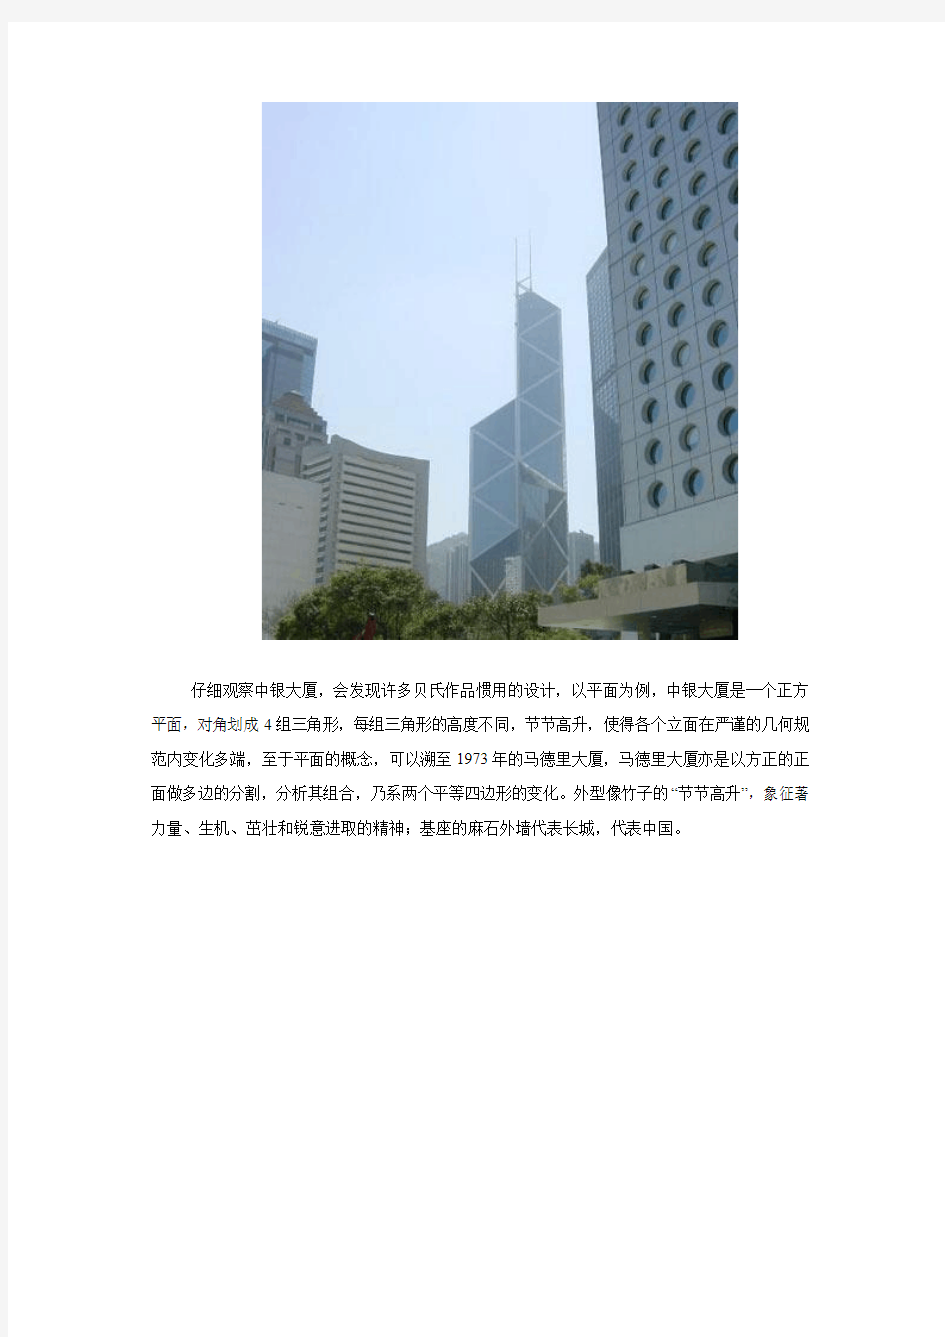 建筑——贝聿铭之香港中国银行大厦